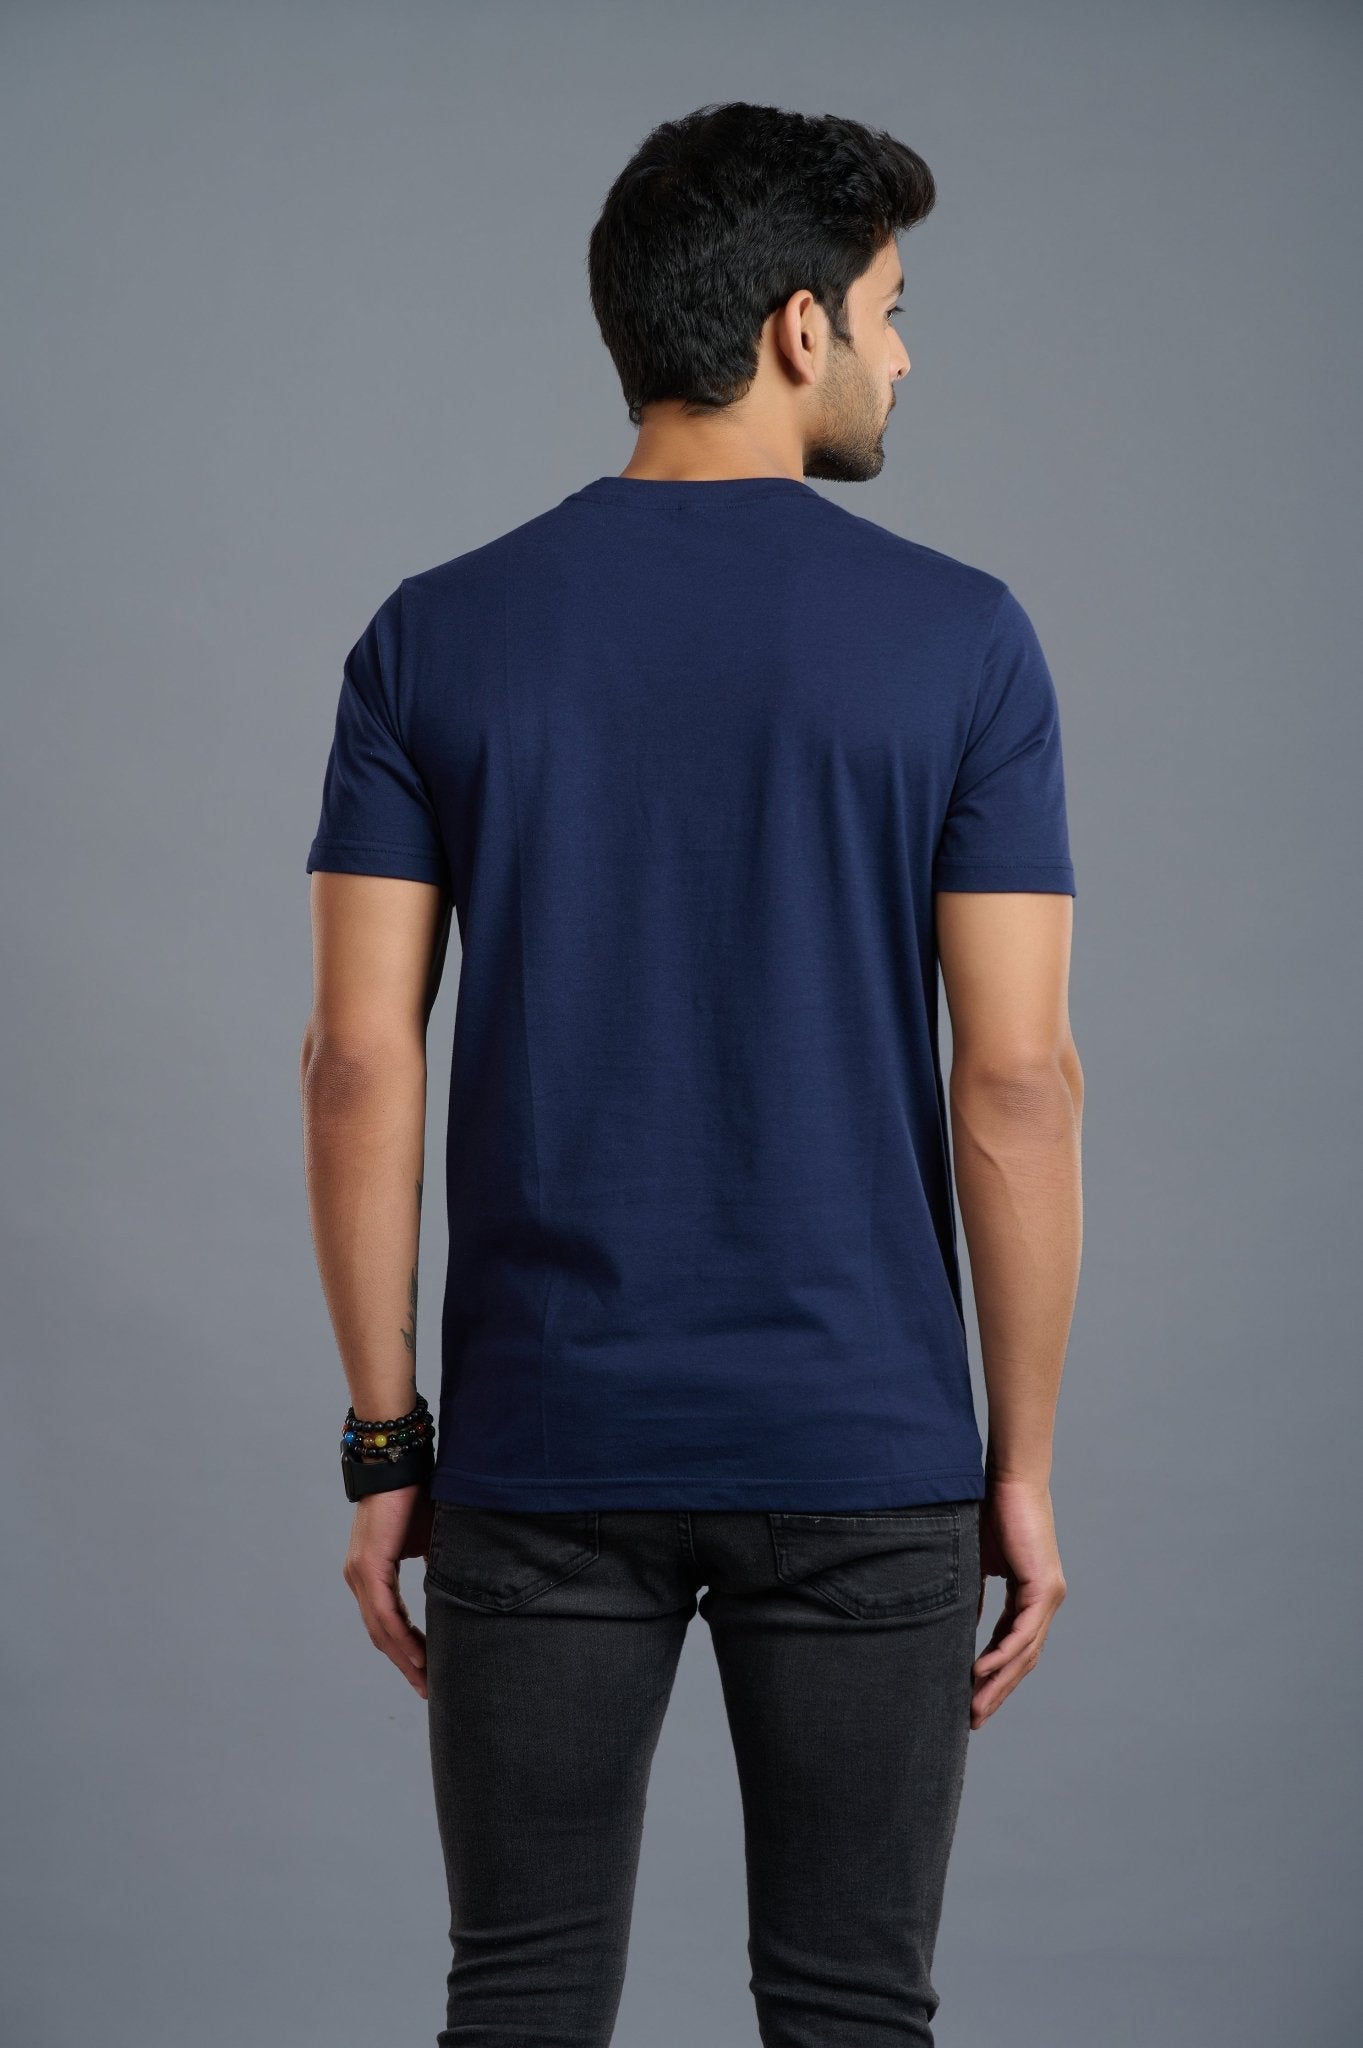 Skull & Devil Printed Navy Blue T-Shirt for Men - Go Devil